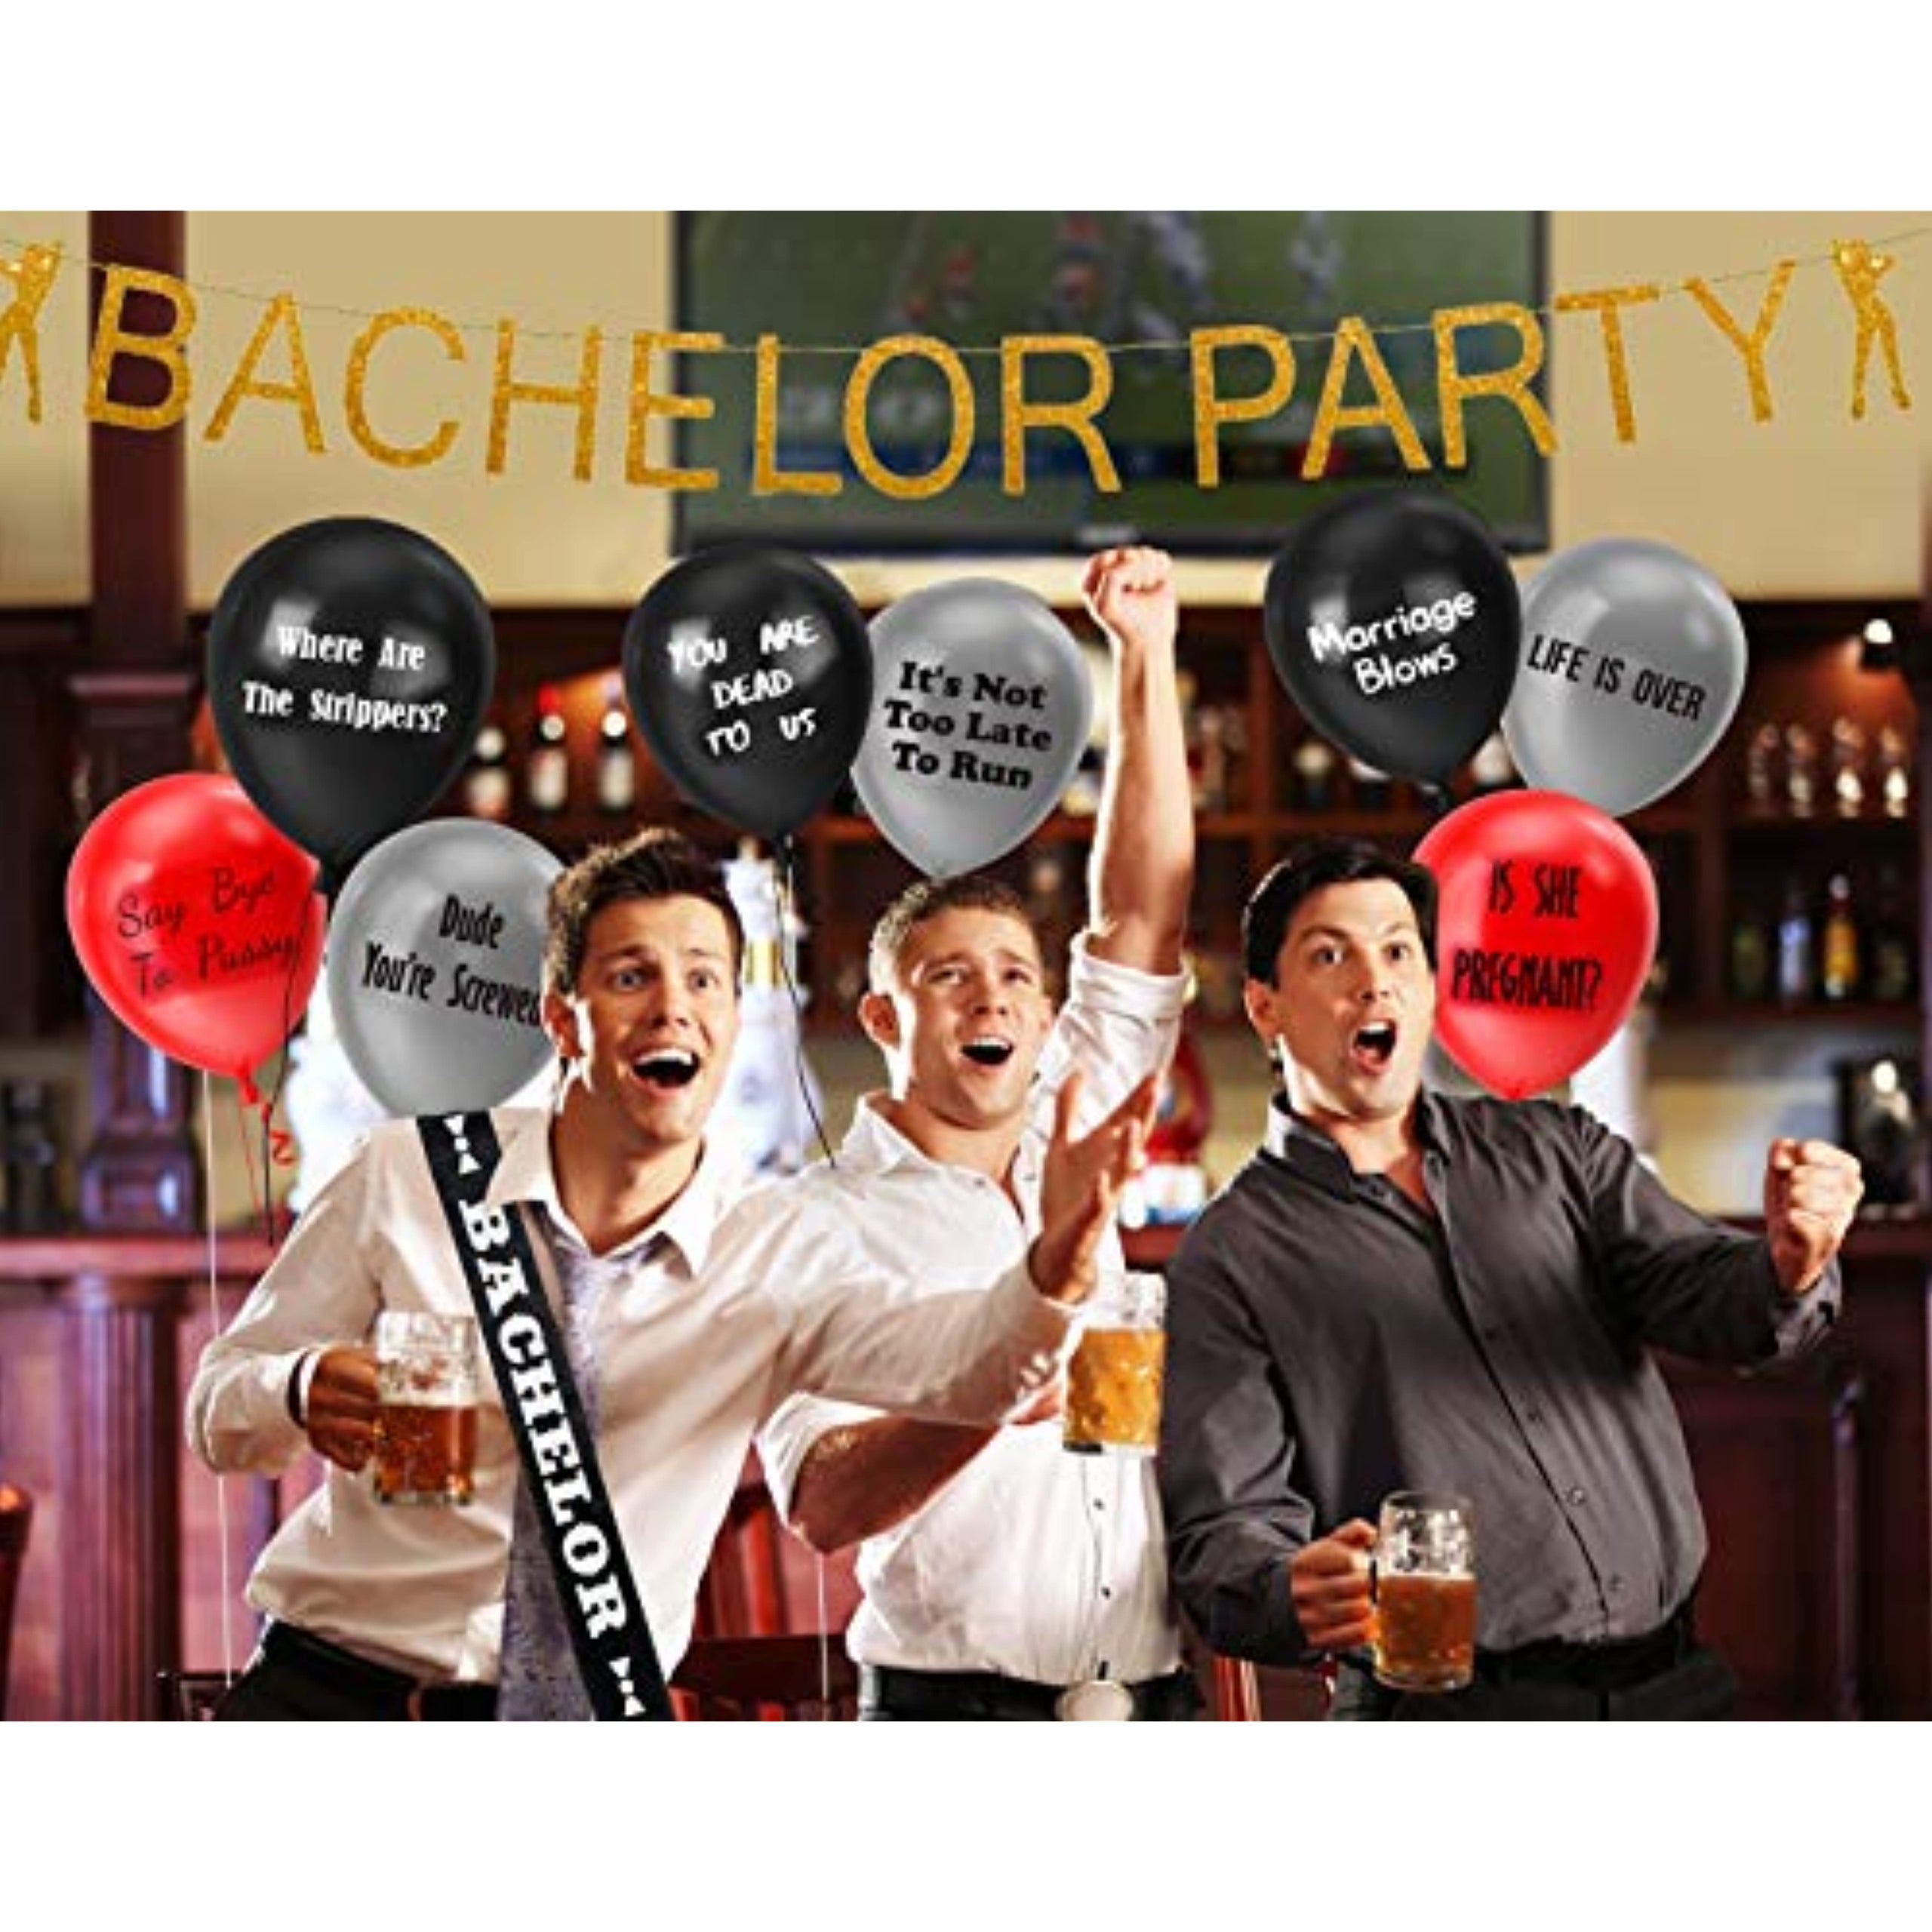 Bachelor Party Gifts  Bachelor party gifts, Bachelor party favors,  Bachelorette bachelor party